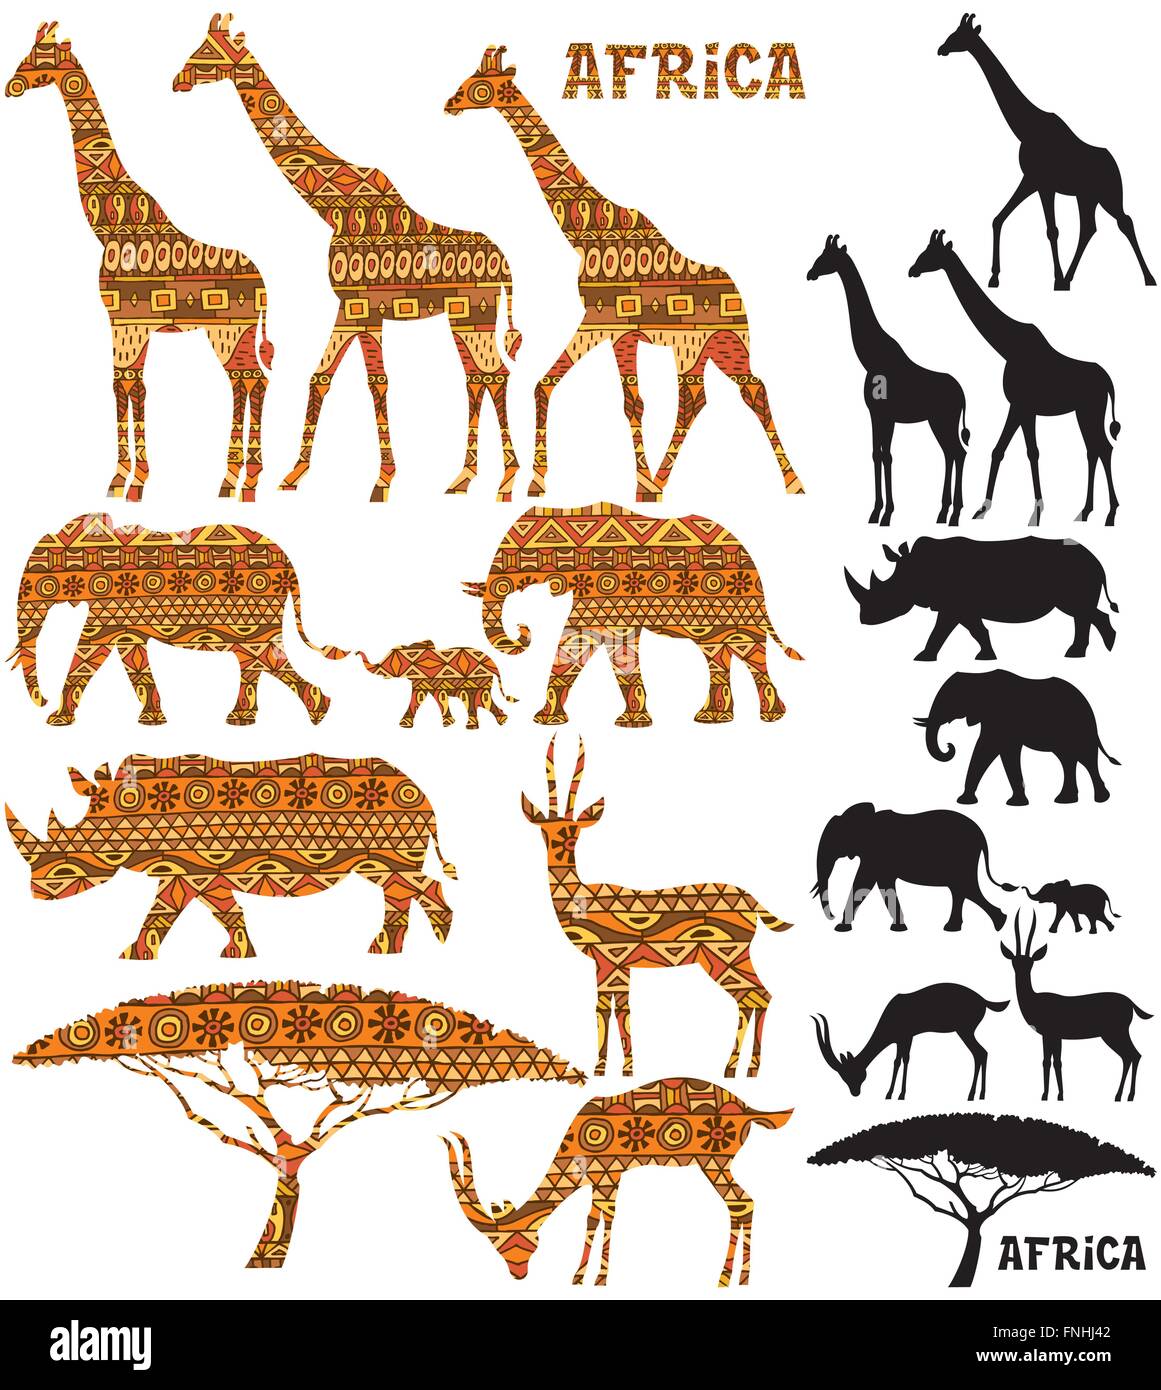 Jeu de silhouettes d'animaux africains en 2 versions : noir et motif rempli. Illustration de Vecteur